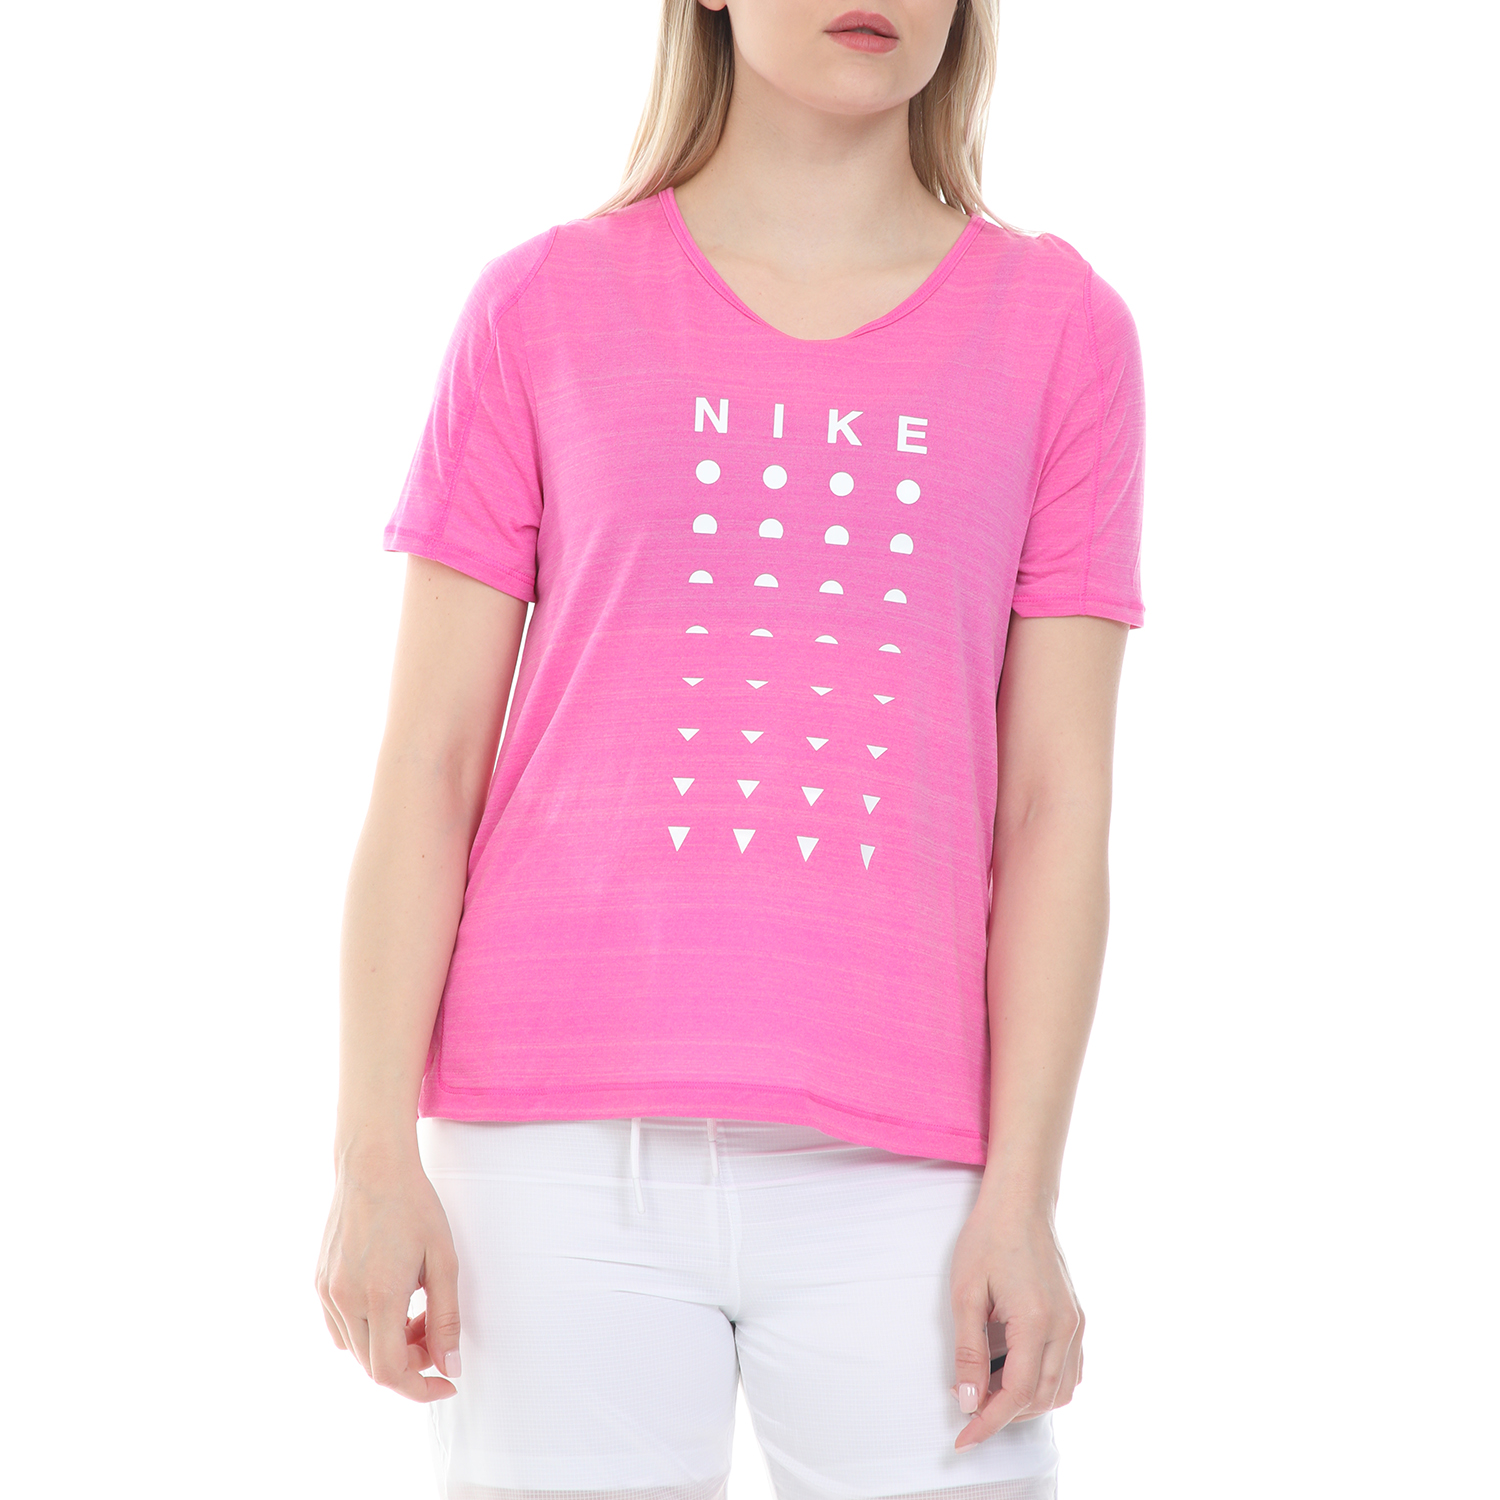 Γυναικεία/Ρούχα/Αθλητικά/T-shirt-Τοπ NIKE - Γυναικεία μπλούζα NIKE ICNCLSH TOP SS BETTER ροζ λευκό